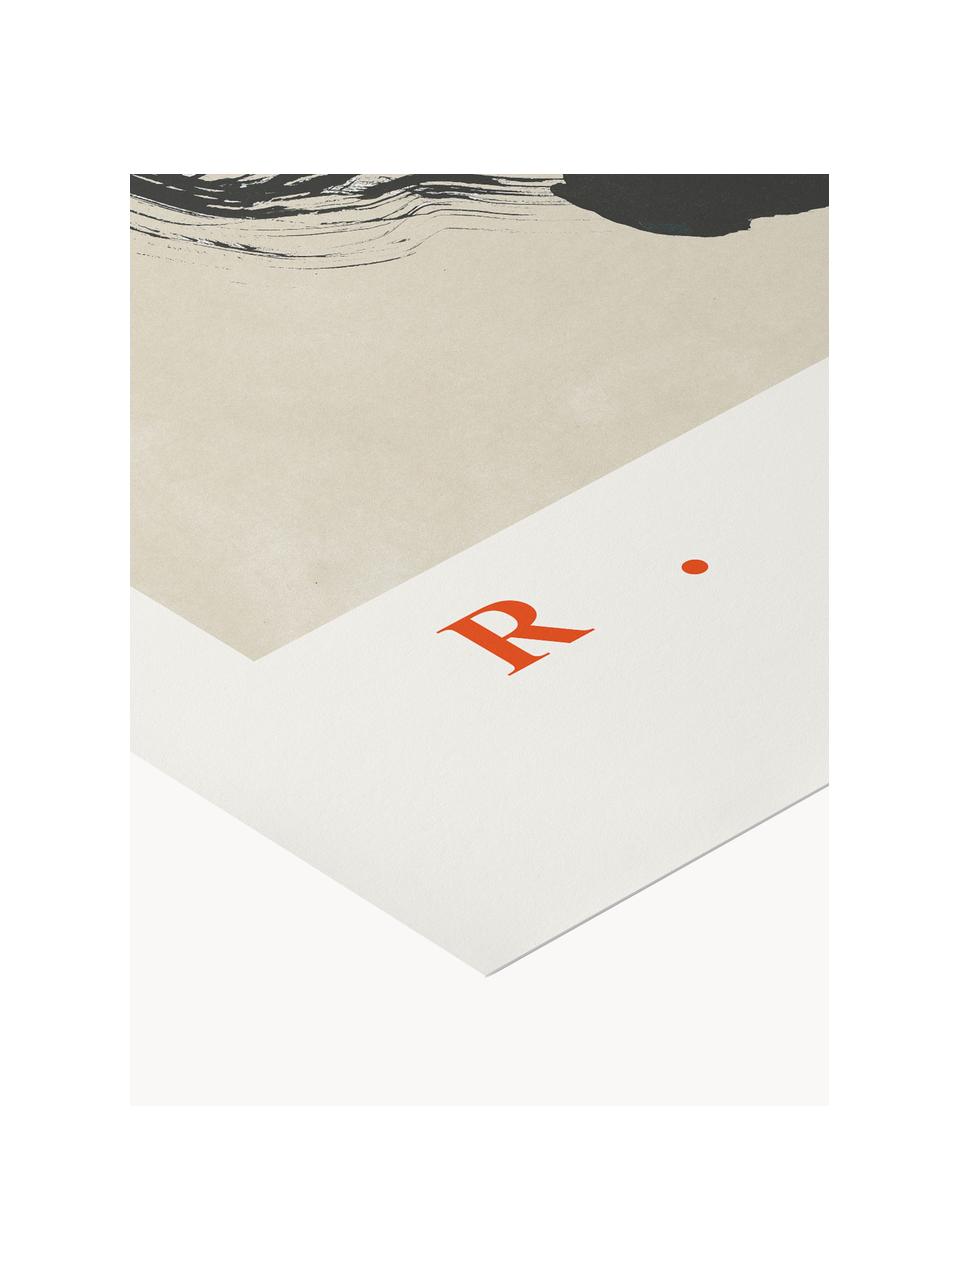 Plakát Ikigai no. 02, Černá, béžová, tmavě červená, Š 30 cm, V 40 cm